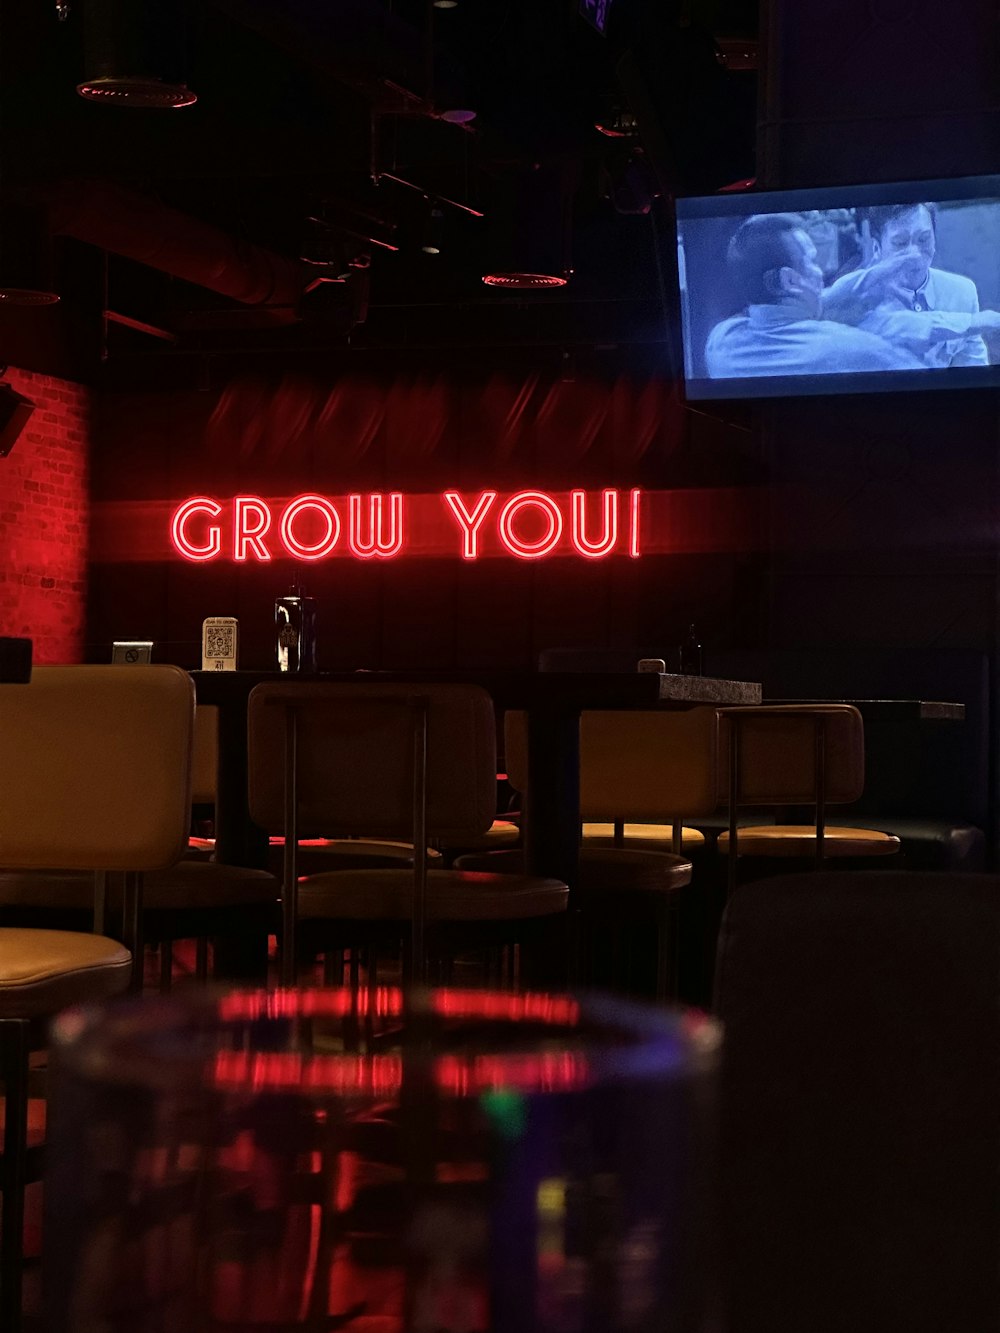 Eine Leuchtreklame mit der Aufschrift "Grow You an einer Wand"